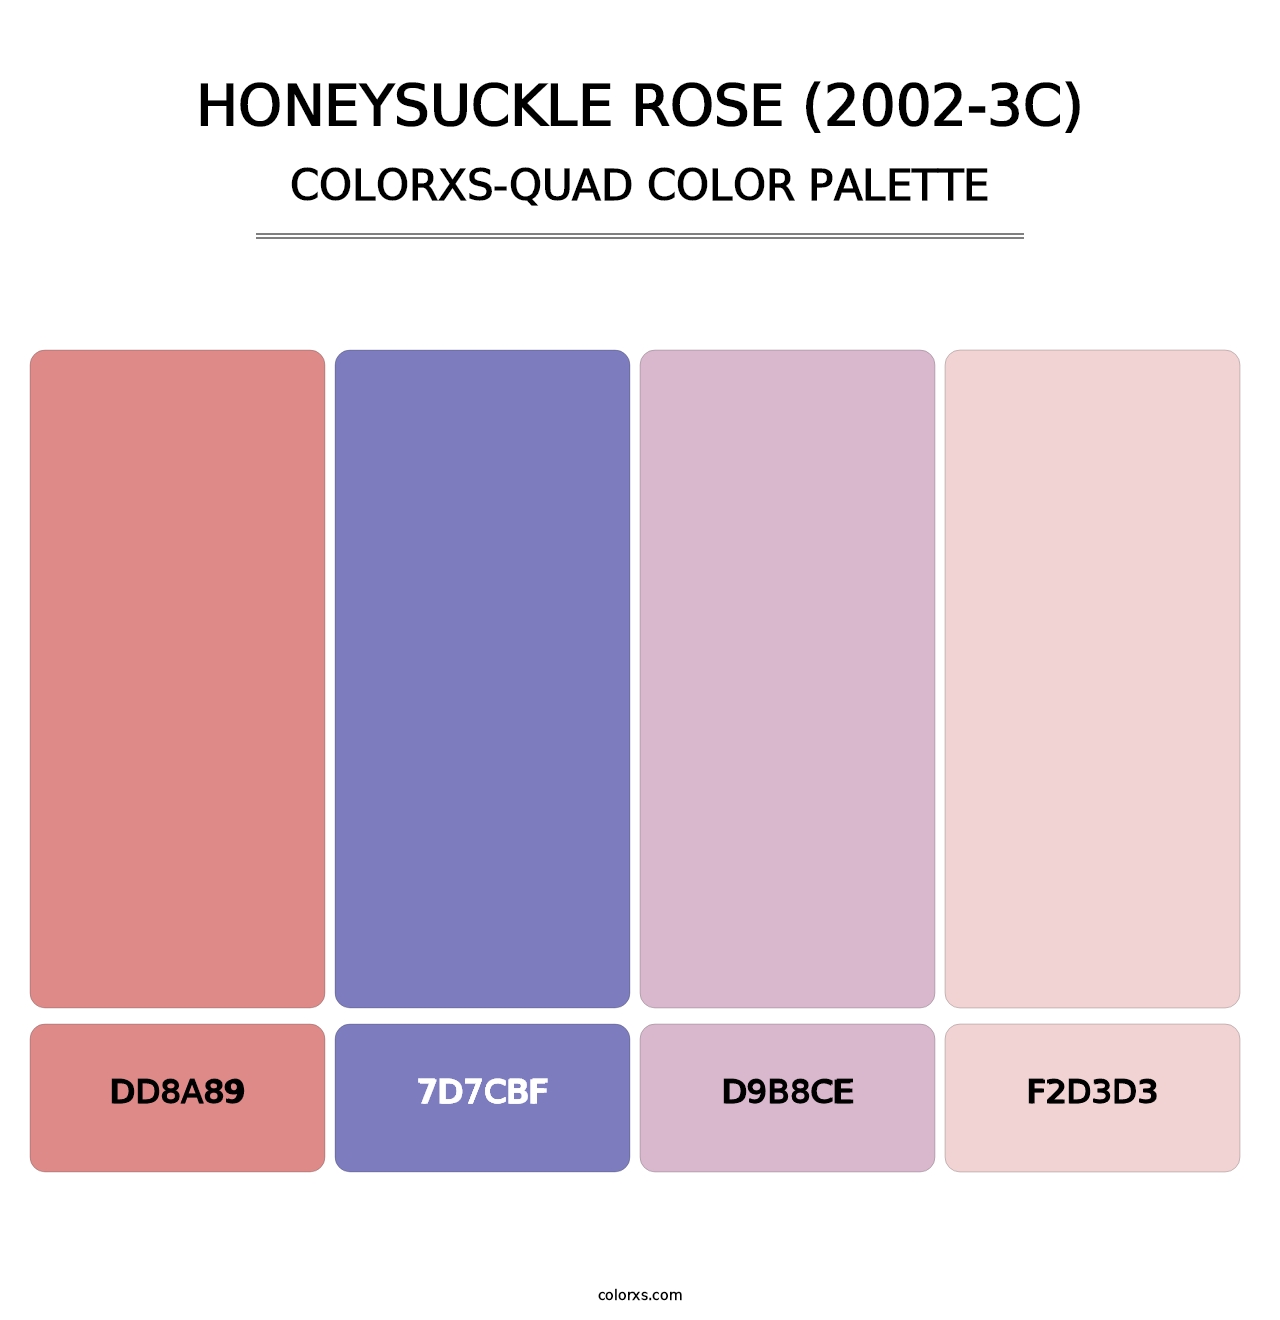 Honeysuckle Rose (2002-3C) - Colorxs Quad Palette